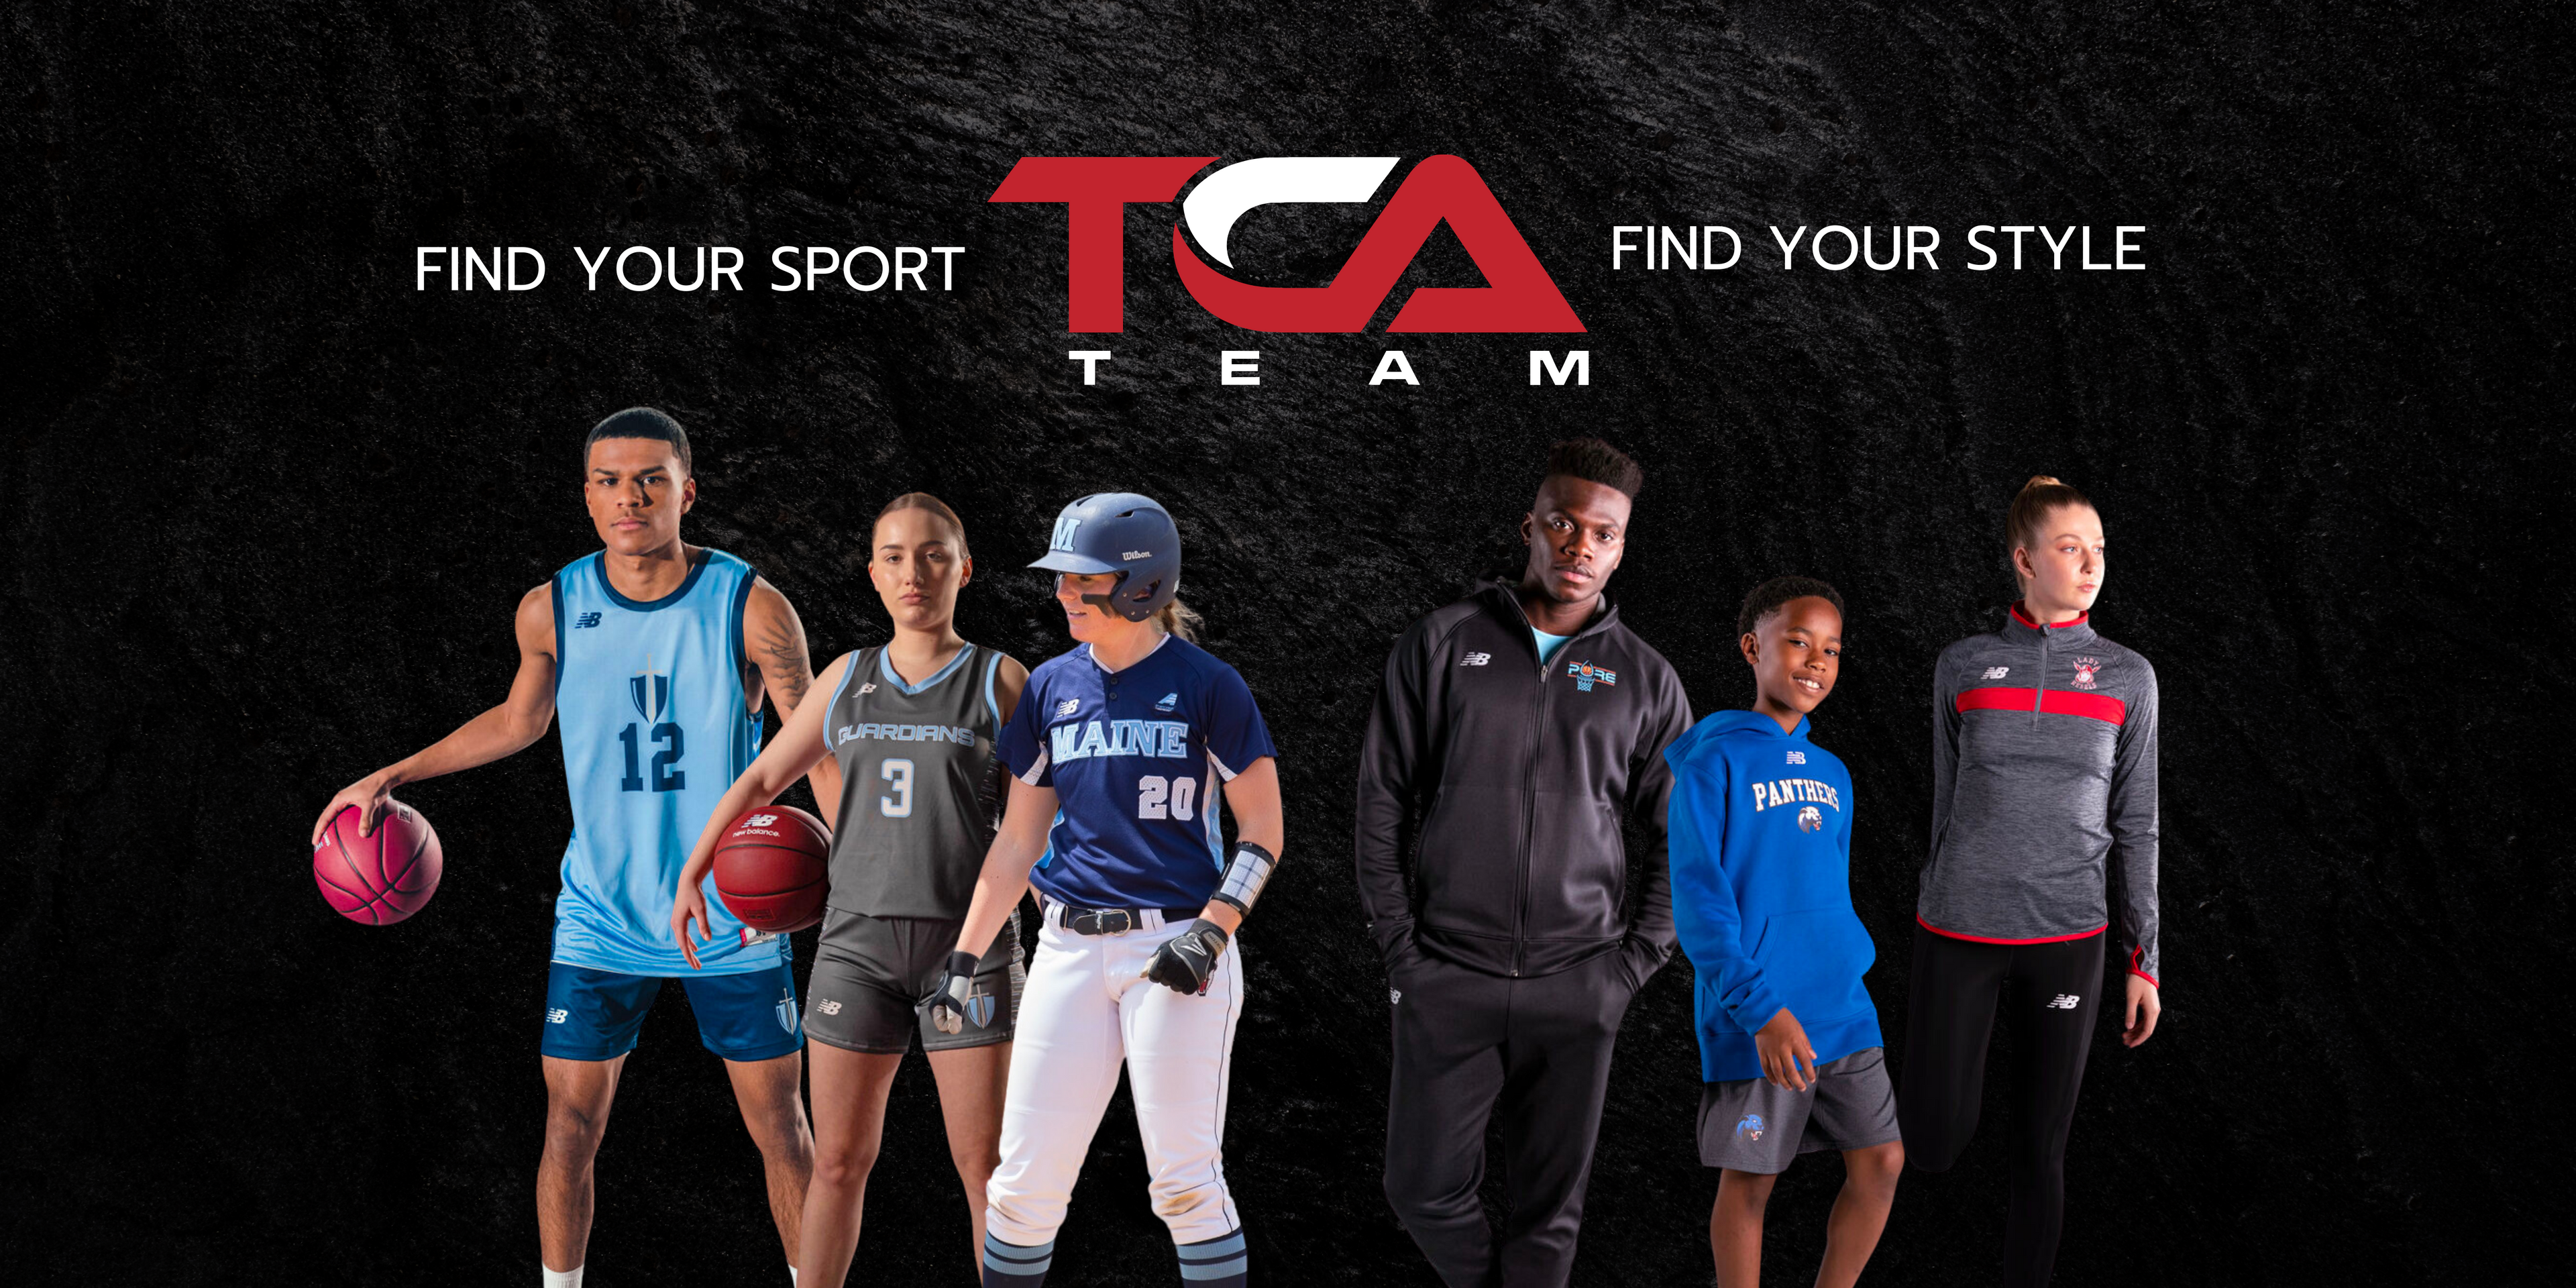 TCA Team - Your go-to destination for premium sports uniforms, team apparel, and equipment